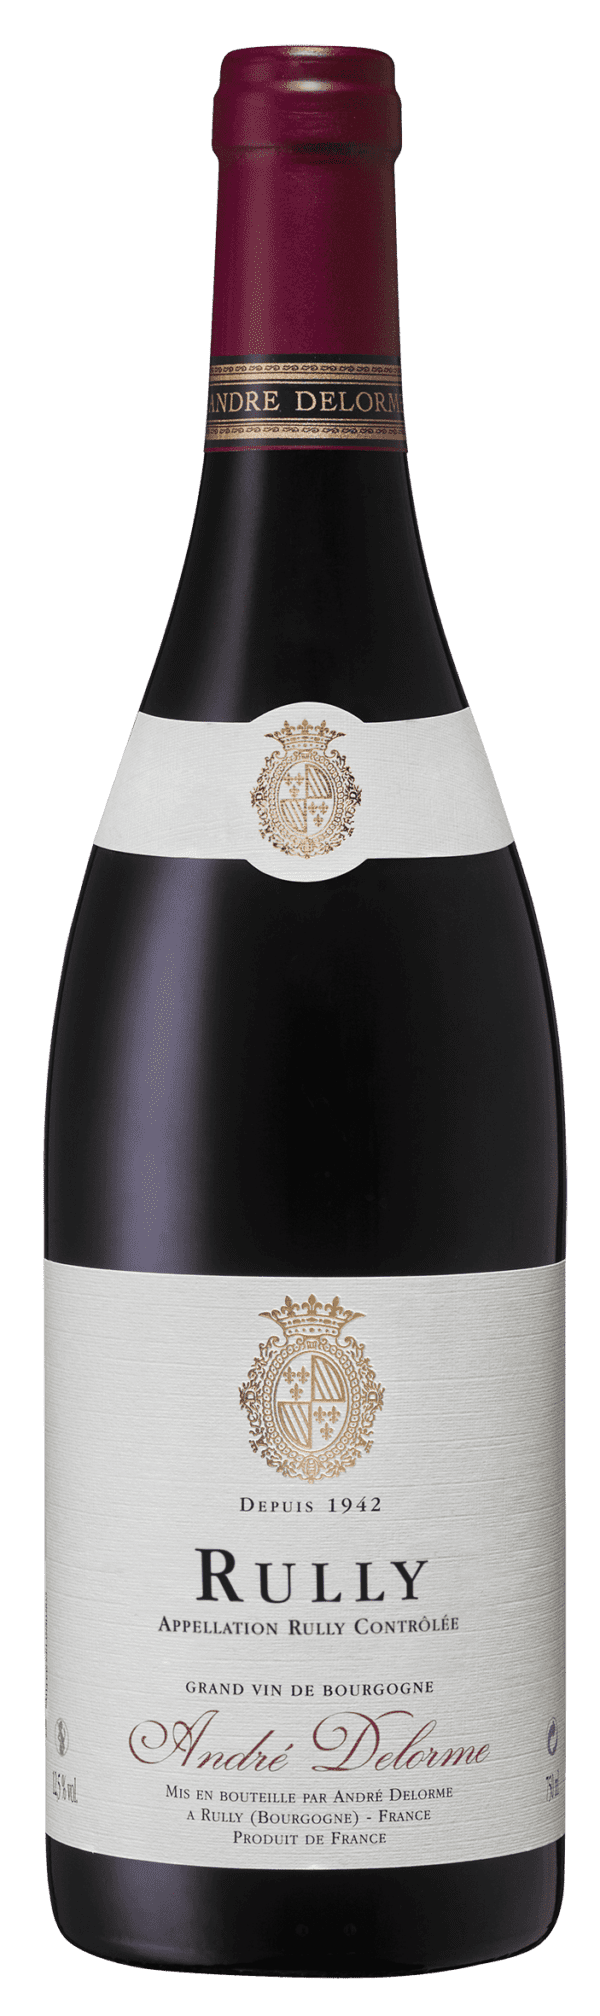 Rully Rouge André Delorme - Vin de Bourgogne Côte Chalonnaise